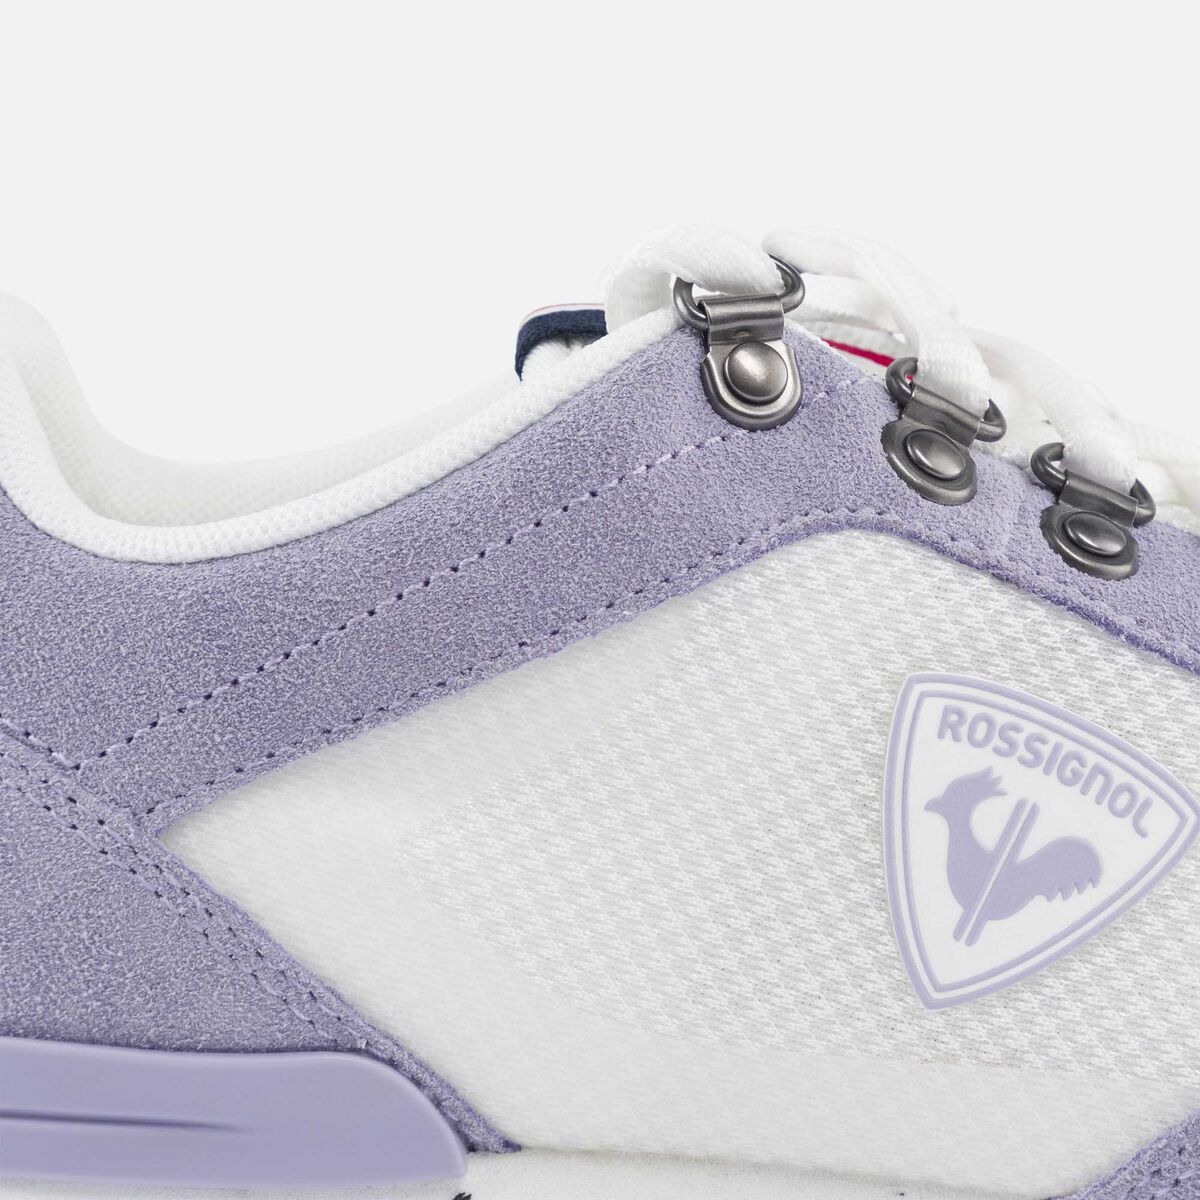 Rossignol Women's Heritage Special lavender sneakers pinkpurple